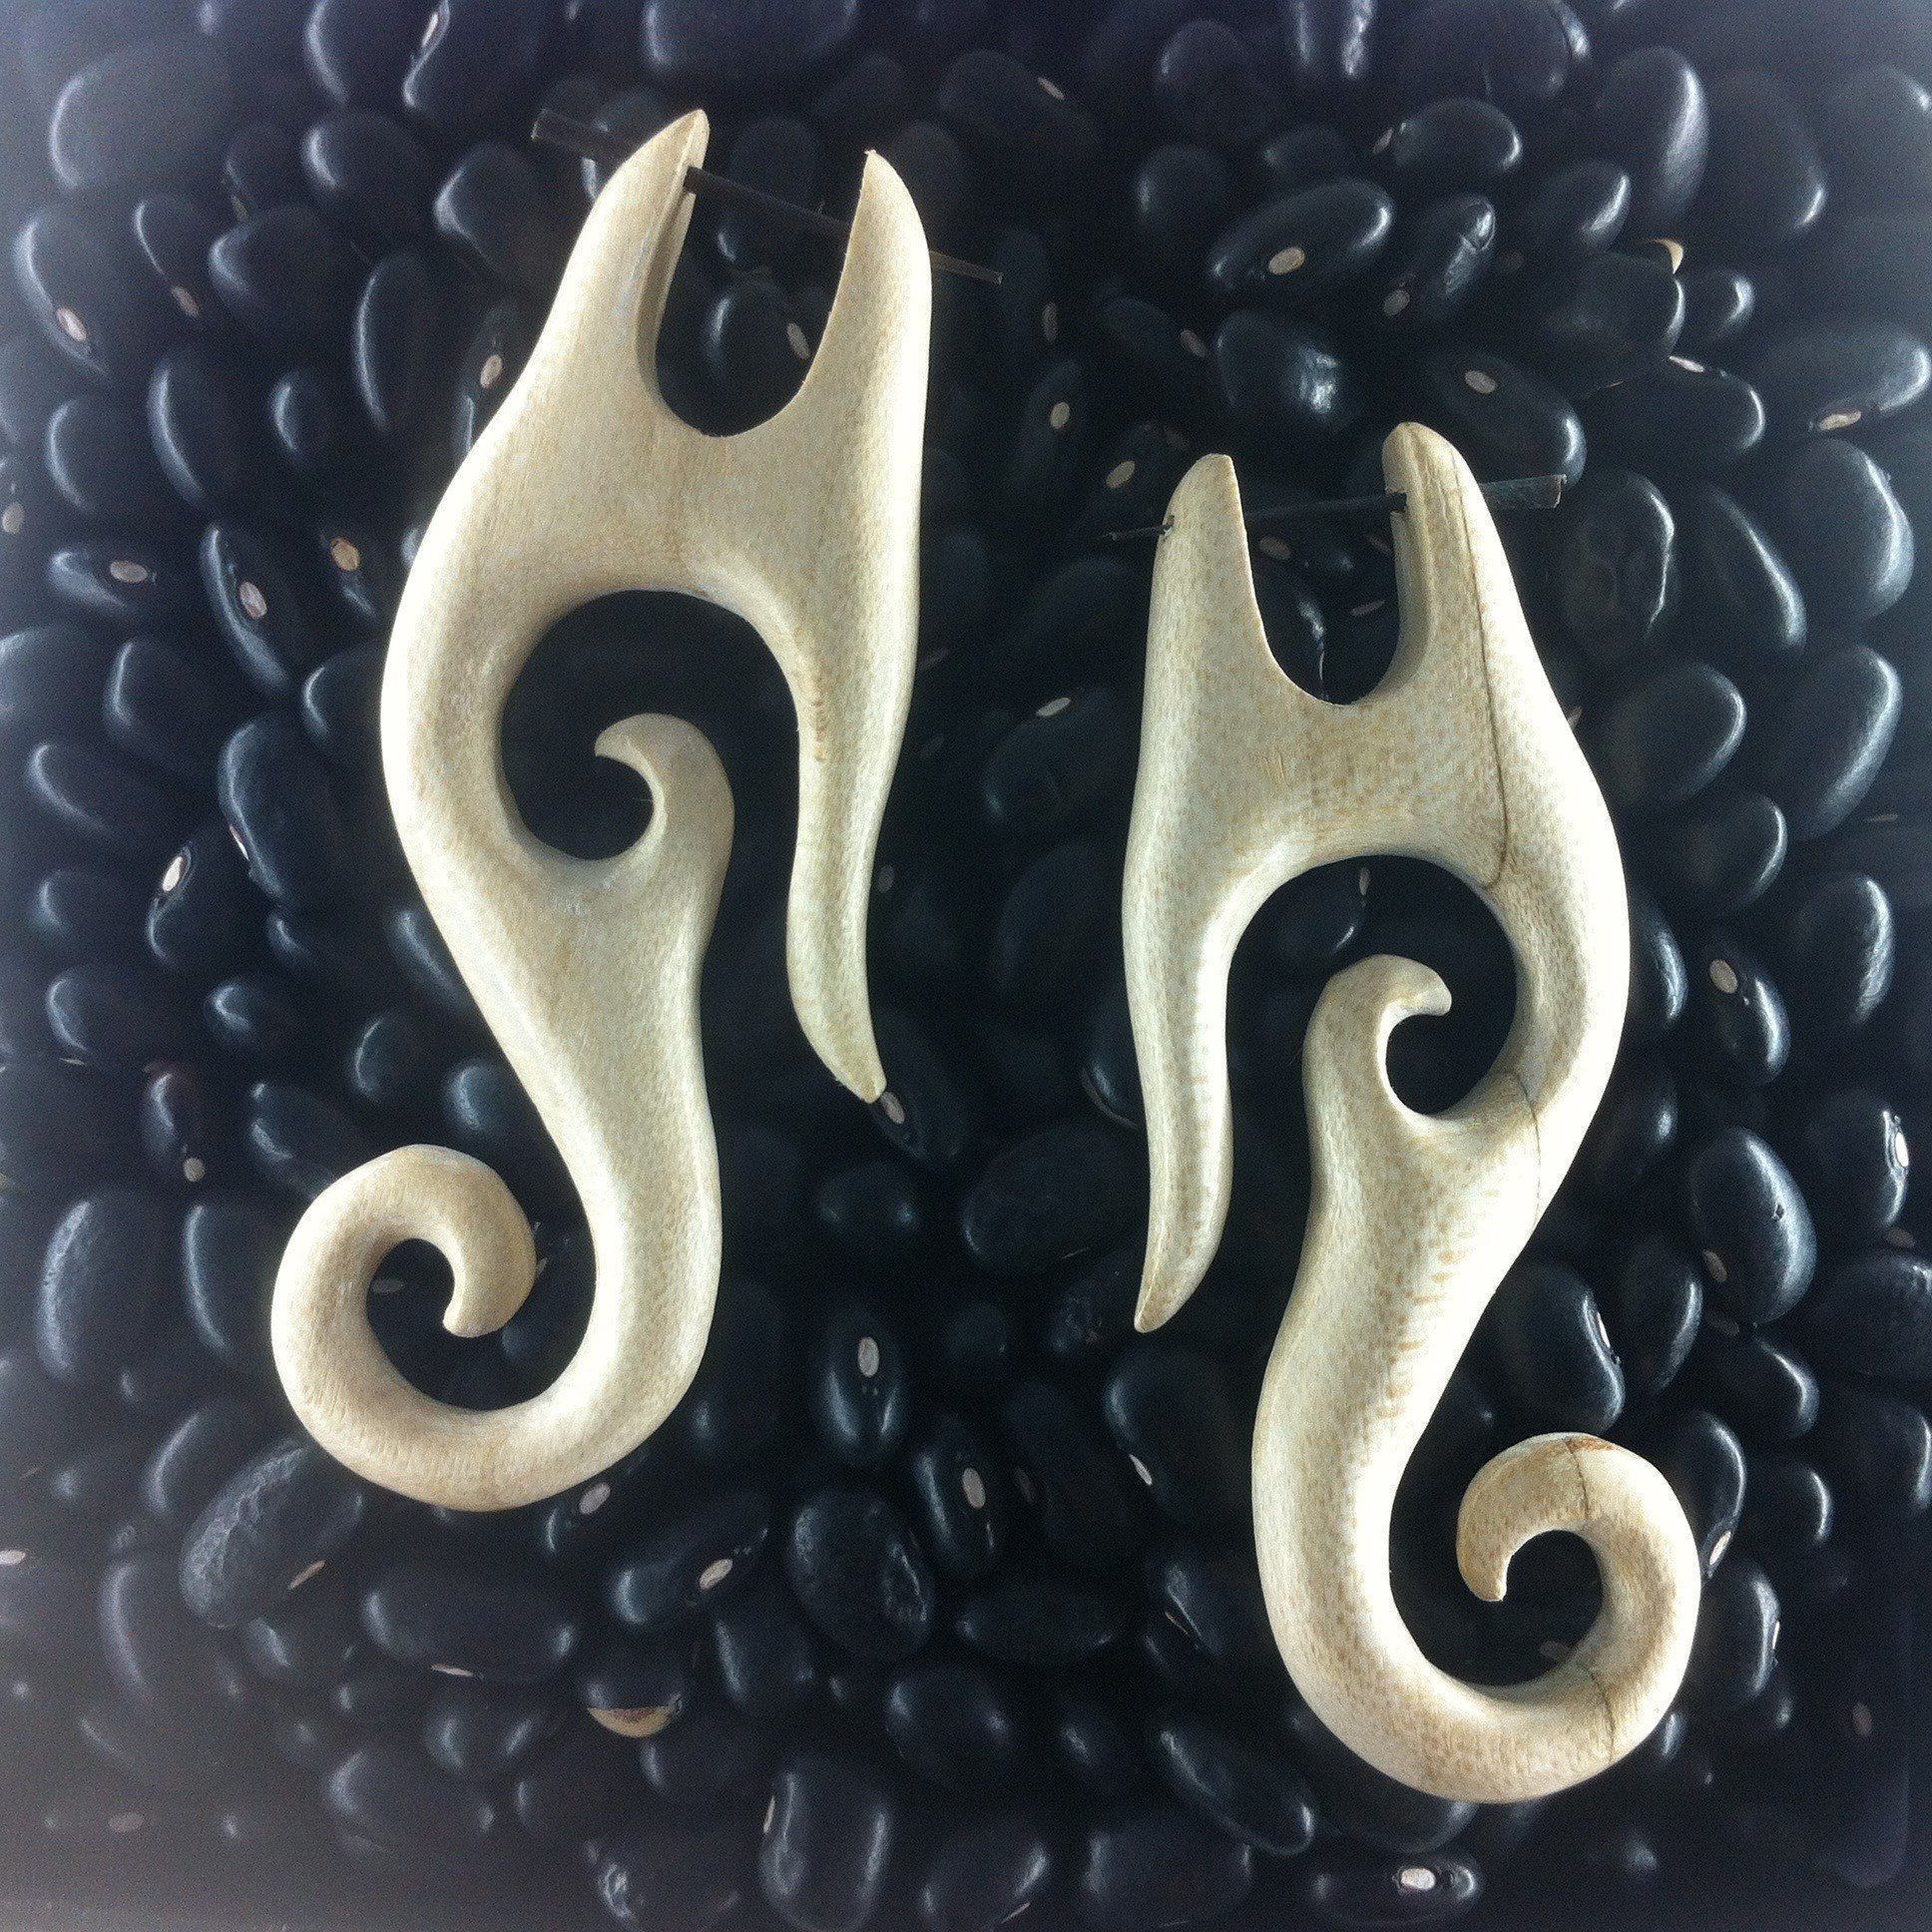 Wood Earrings :|: Drops. Golden Wood Earrings, spirals. | Spiral Earrings